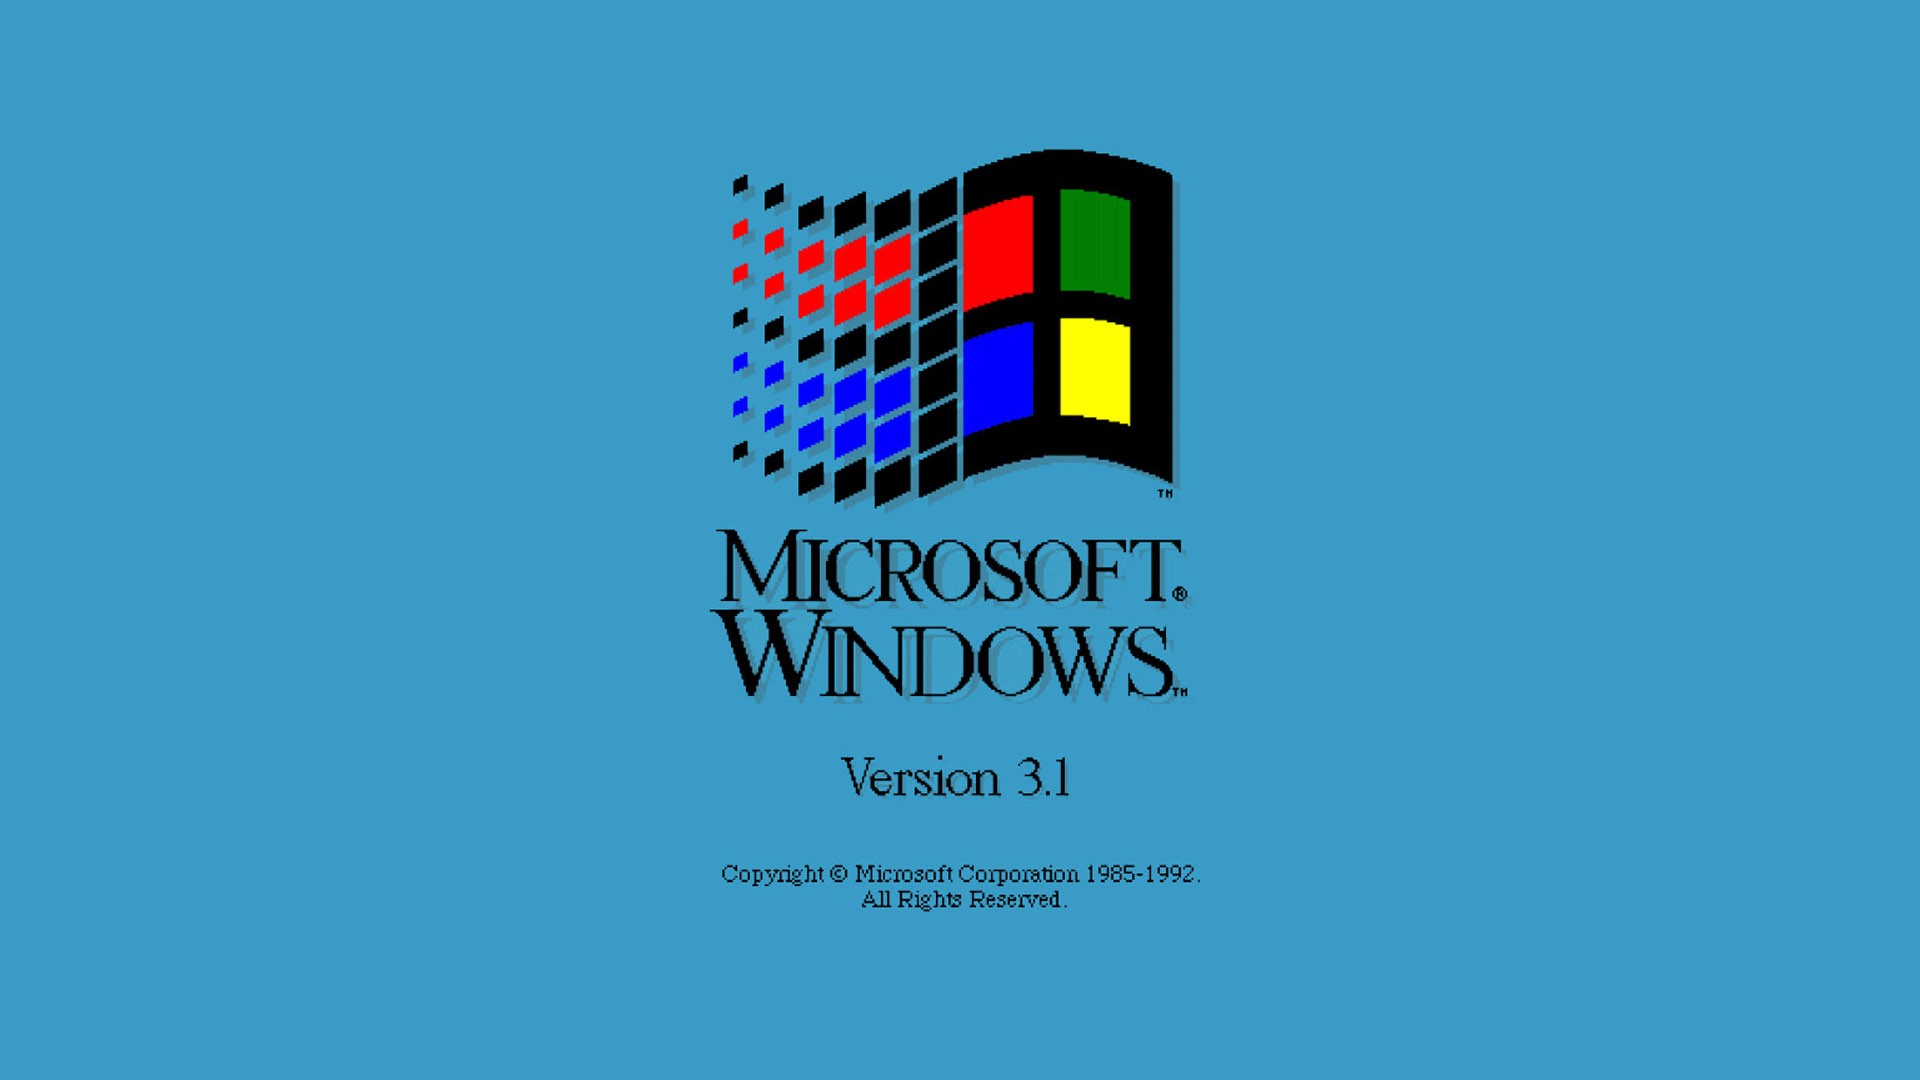 โหลด windows movie maker windows 7 32 bit